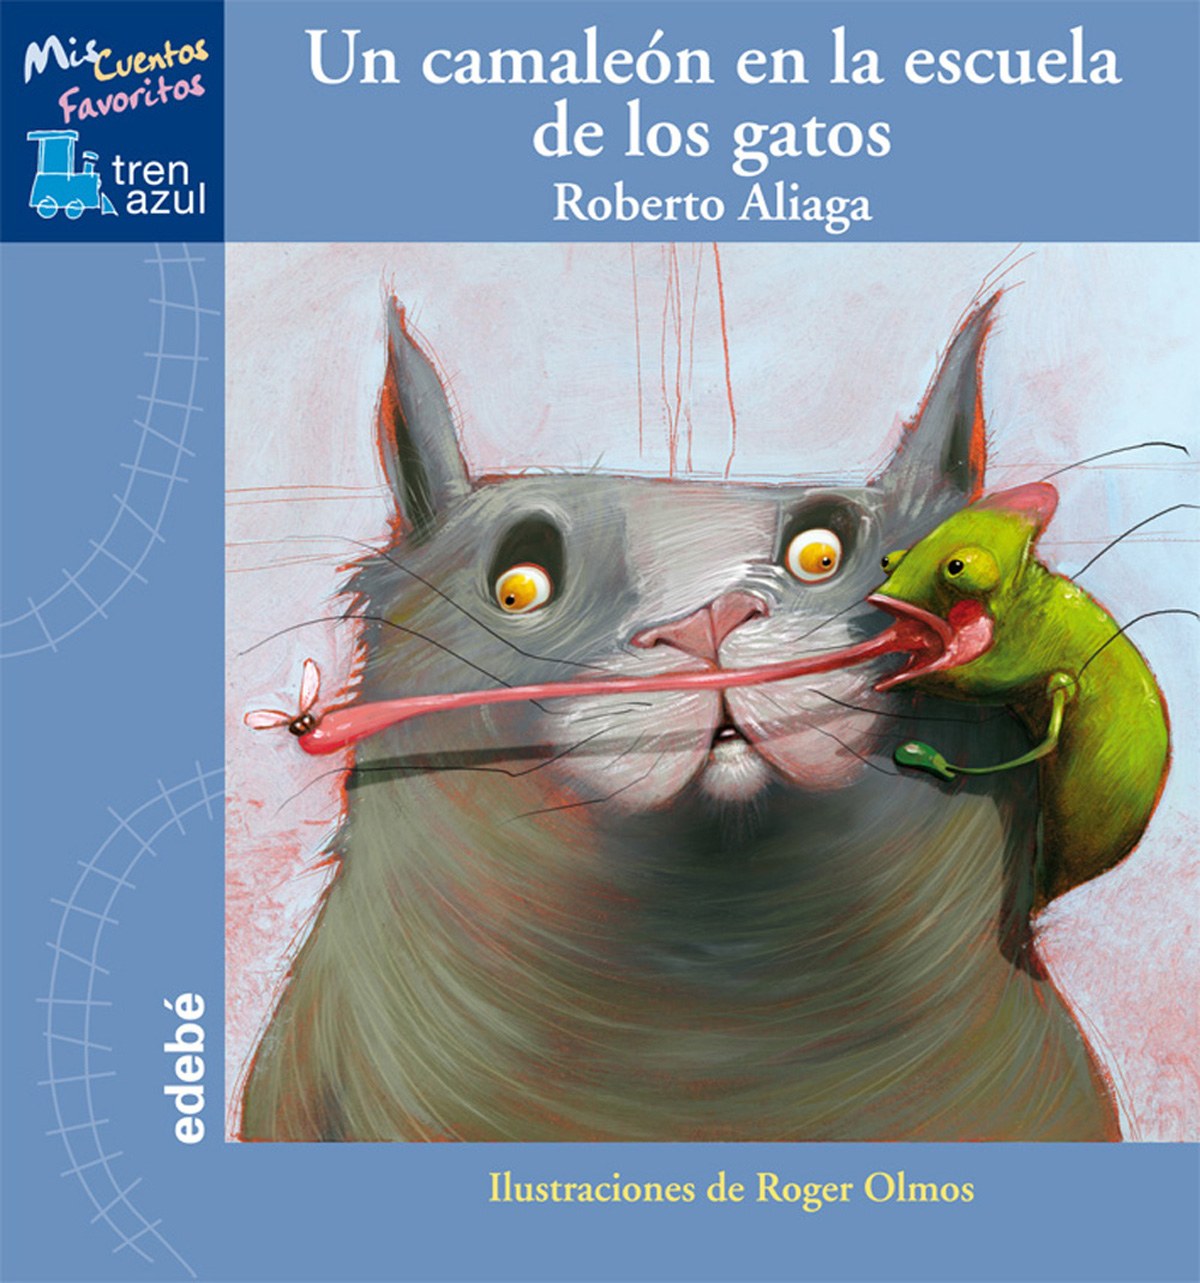 Un camaleon en la escuela de los gatos - Roberto Aliaga Sanchez